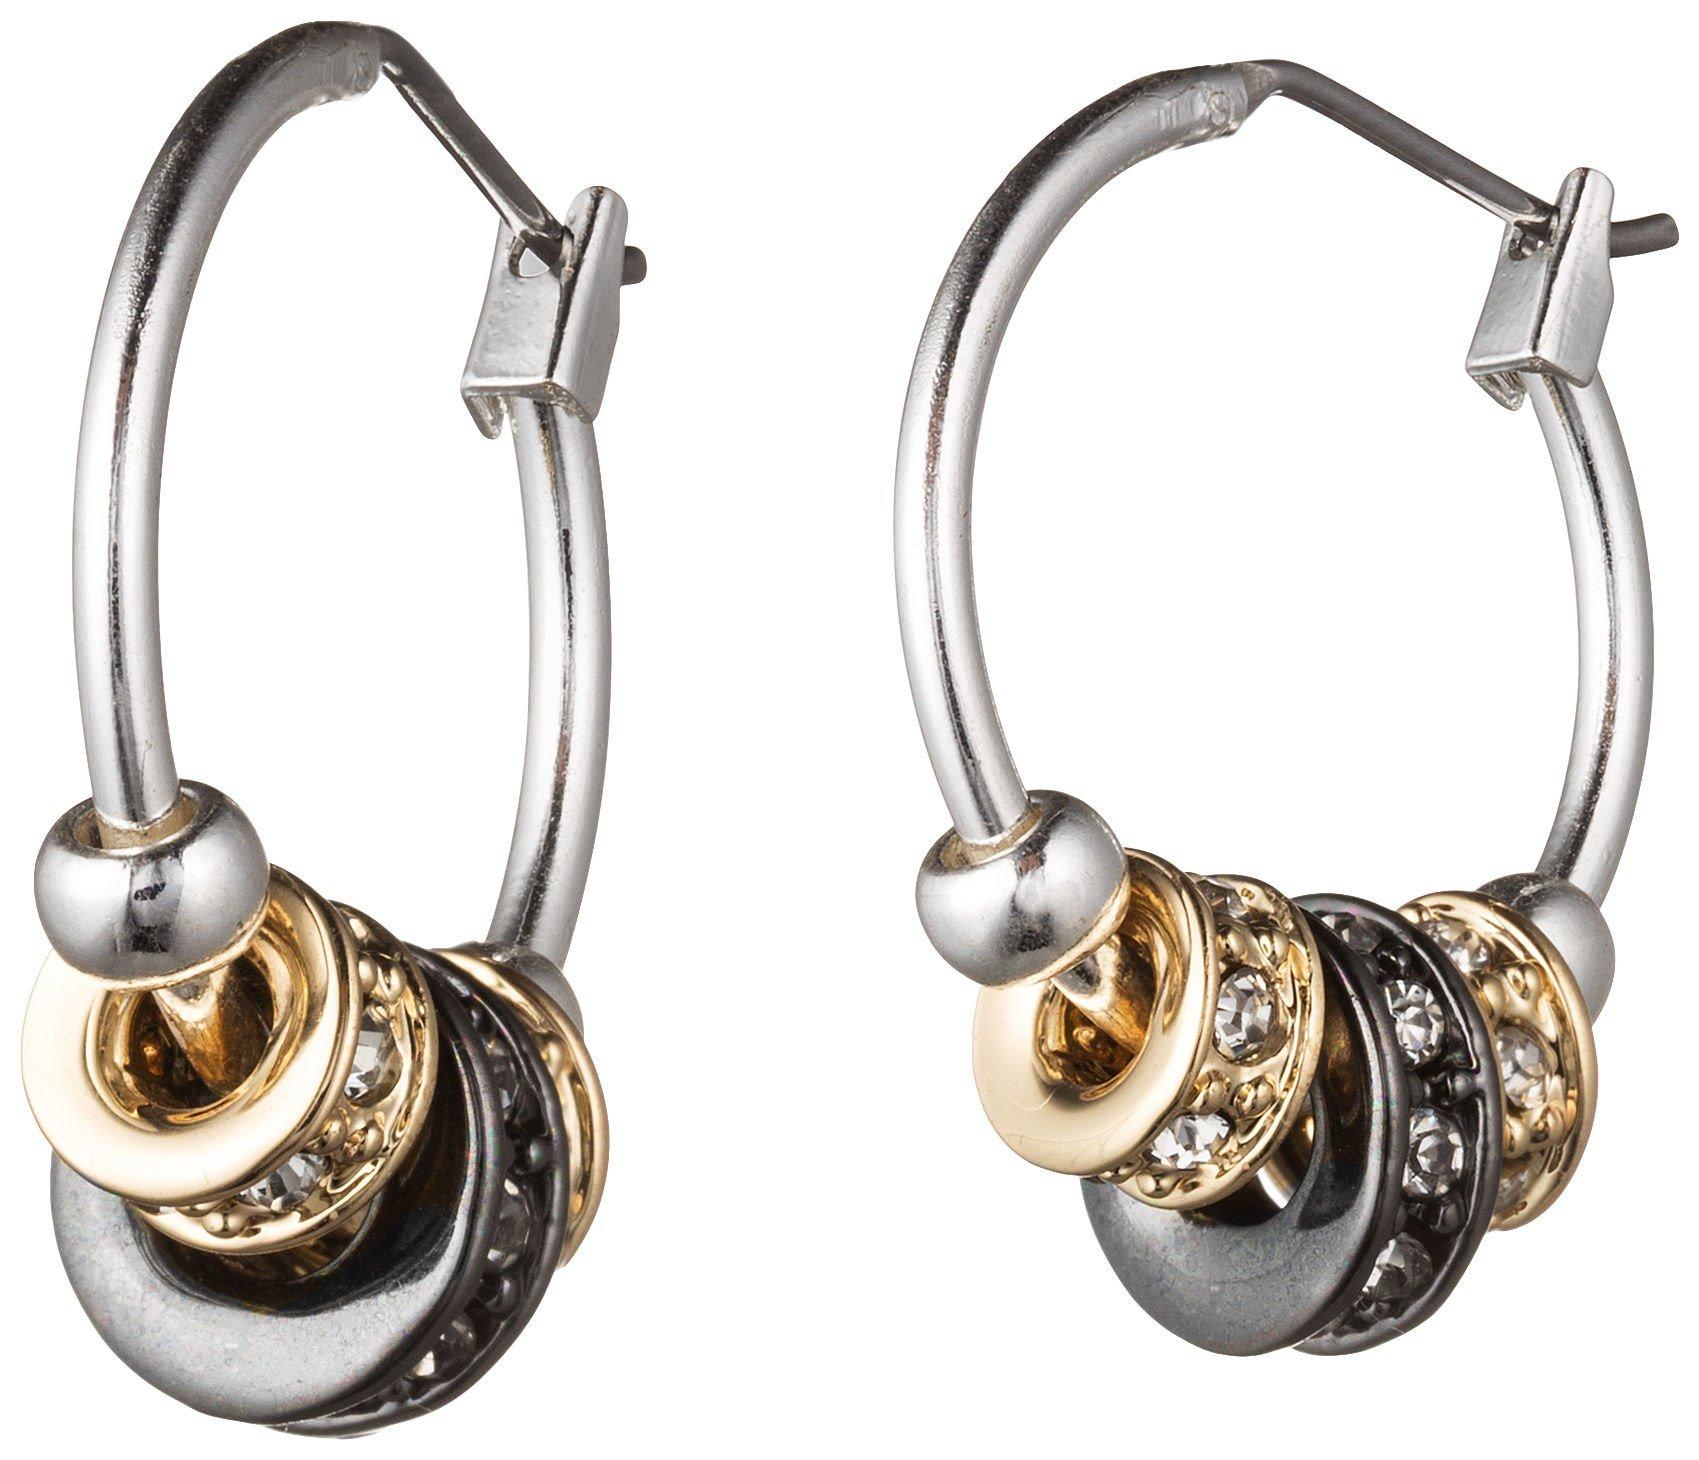 Nine West Tri-Tone Pave Slider Hoop Earrings